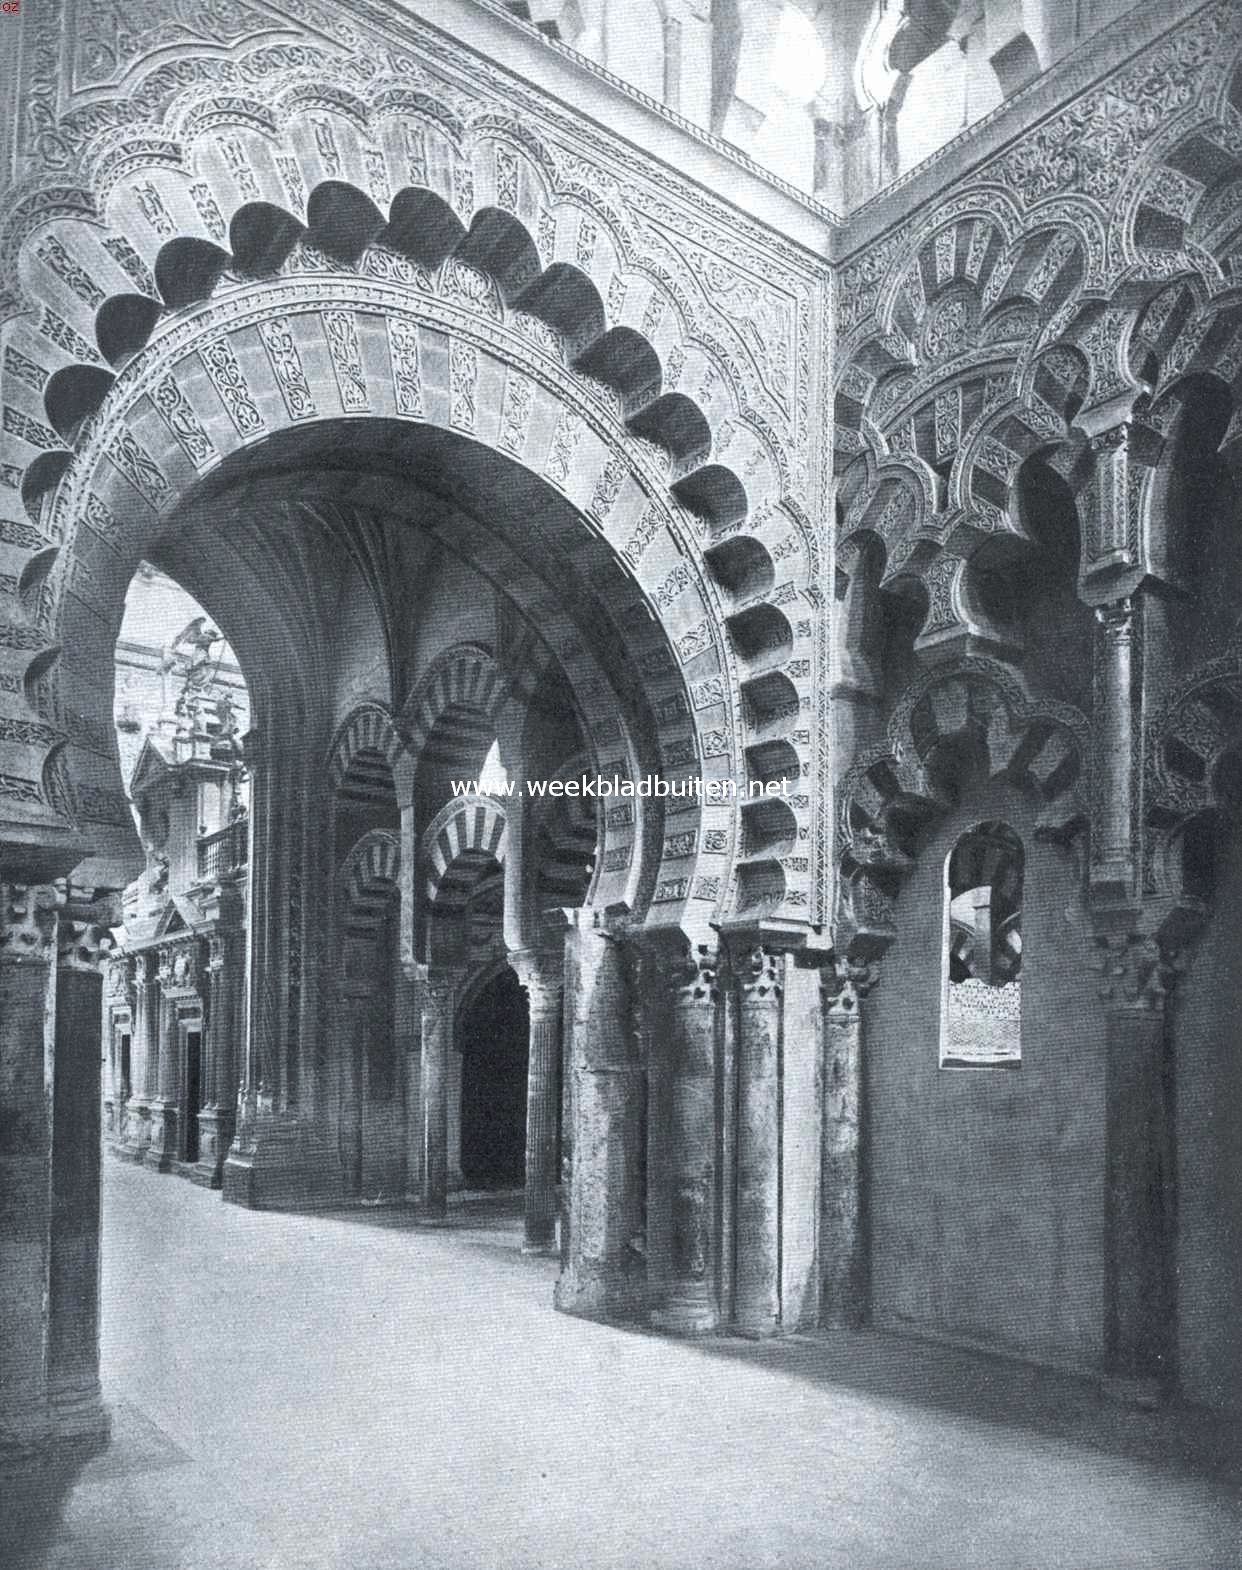 Crdoba. Het inwendige van de moskee, met haar dooreenmengeling van Moorschen en christelijken stijl